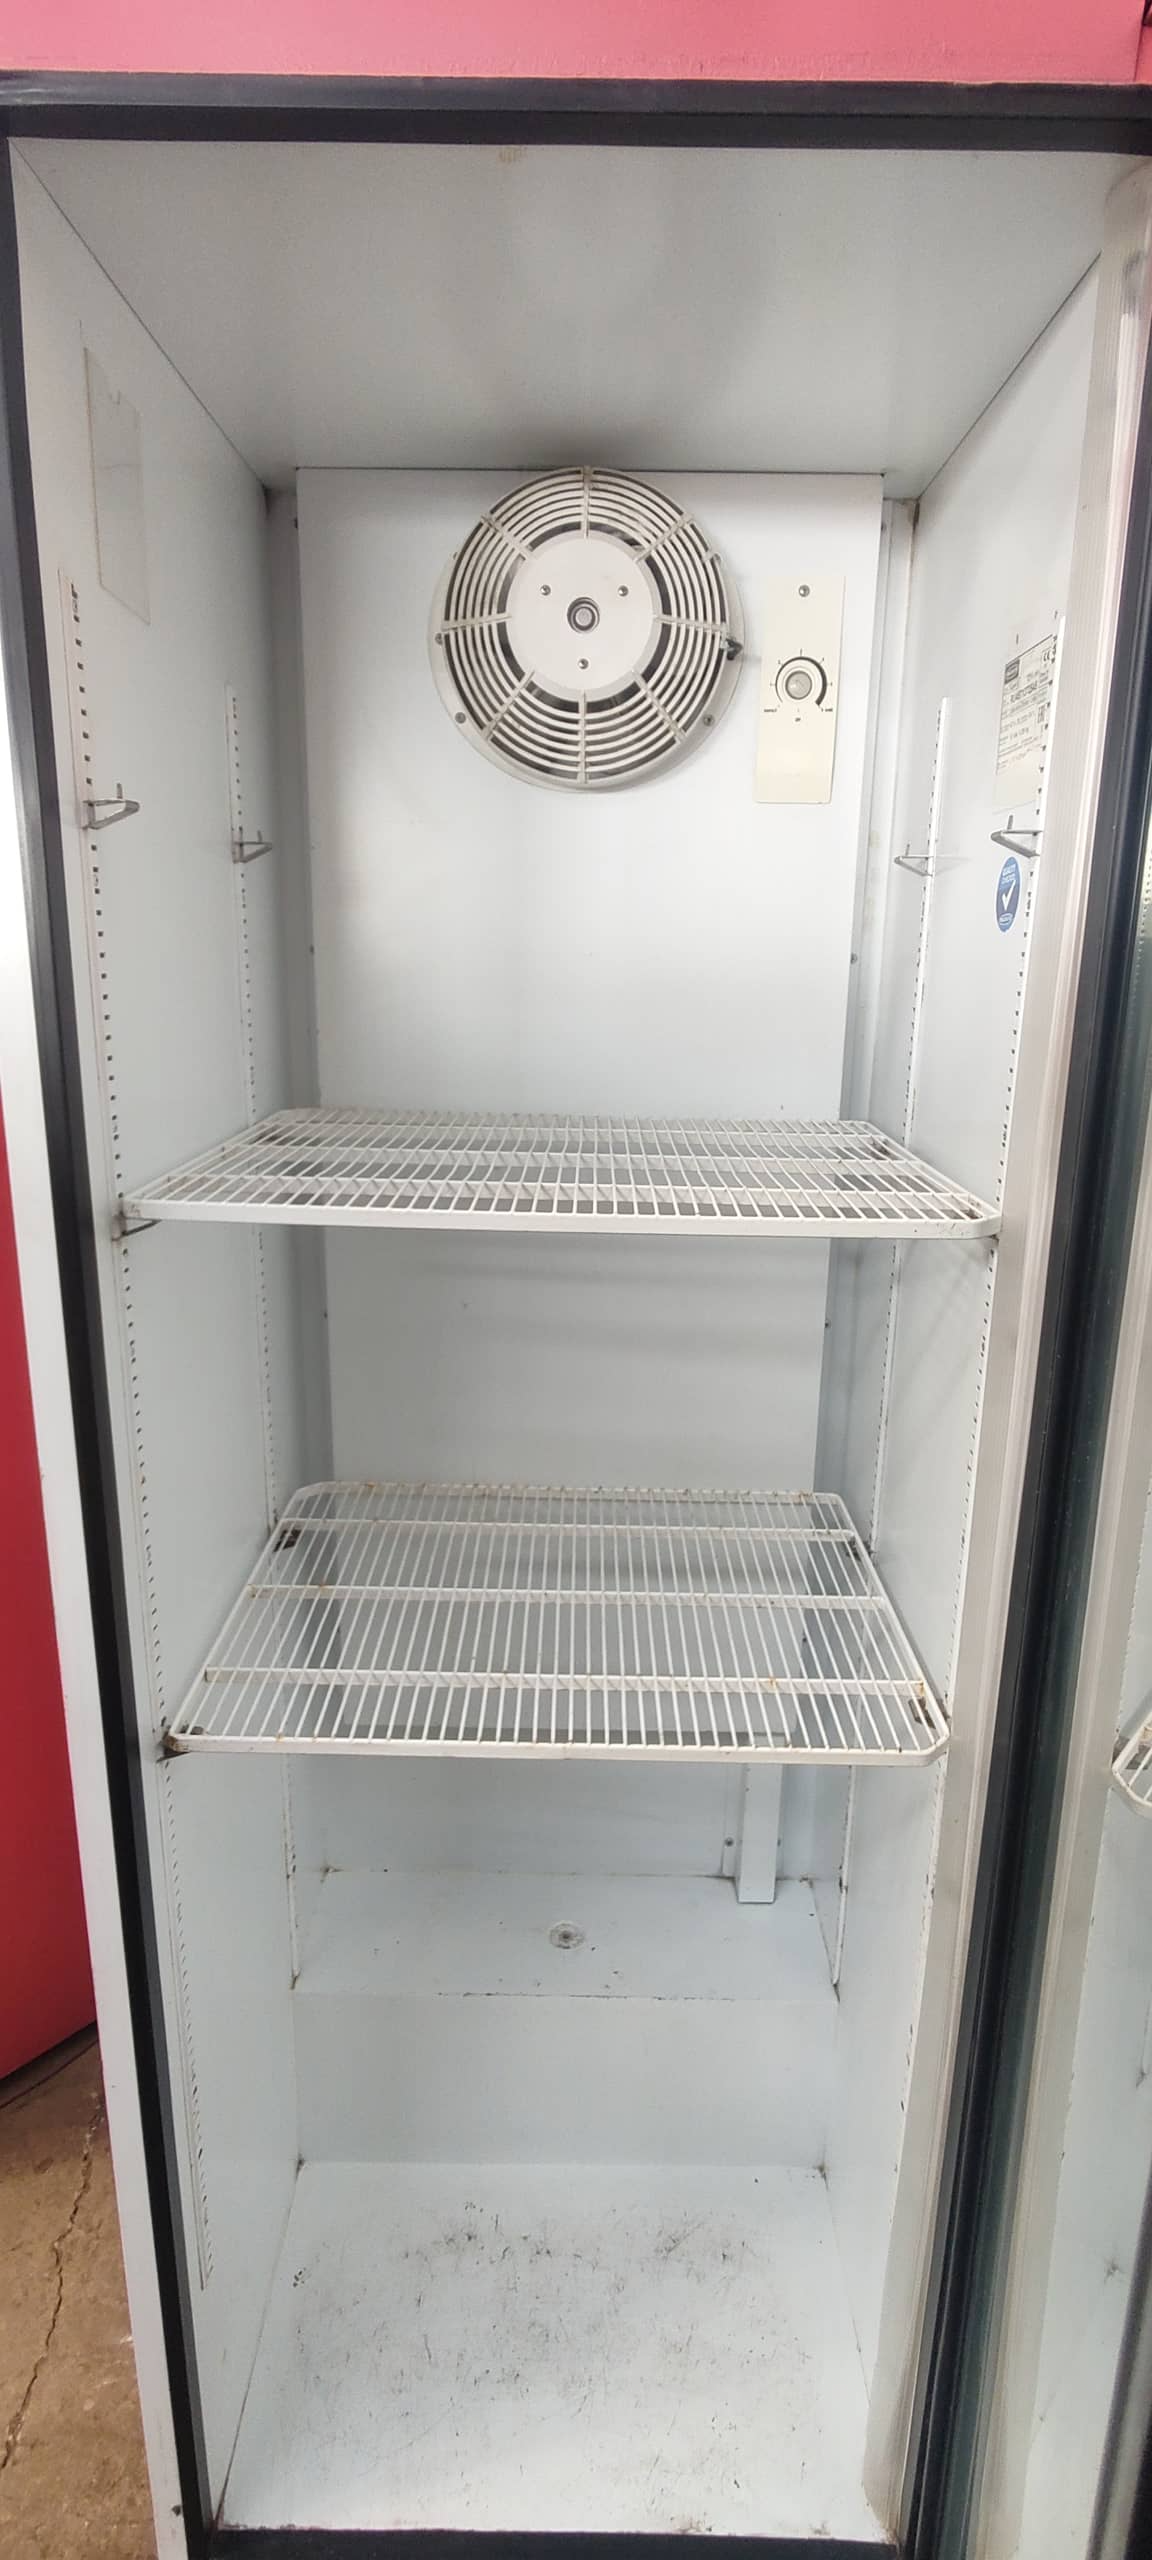 холодильник186х66х63